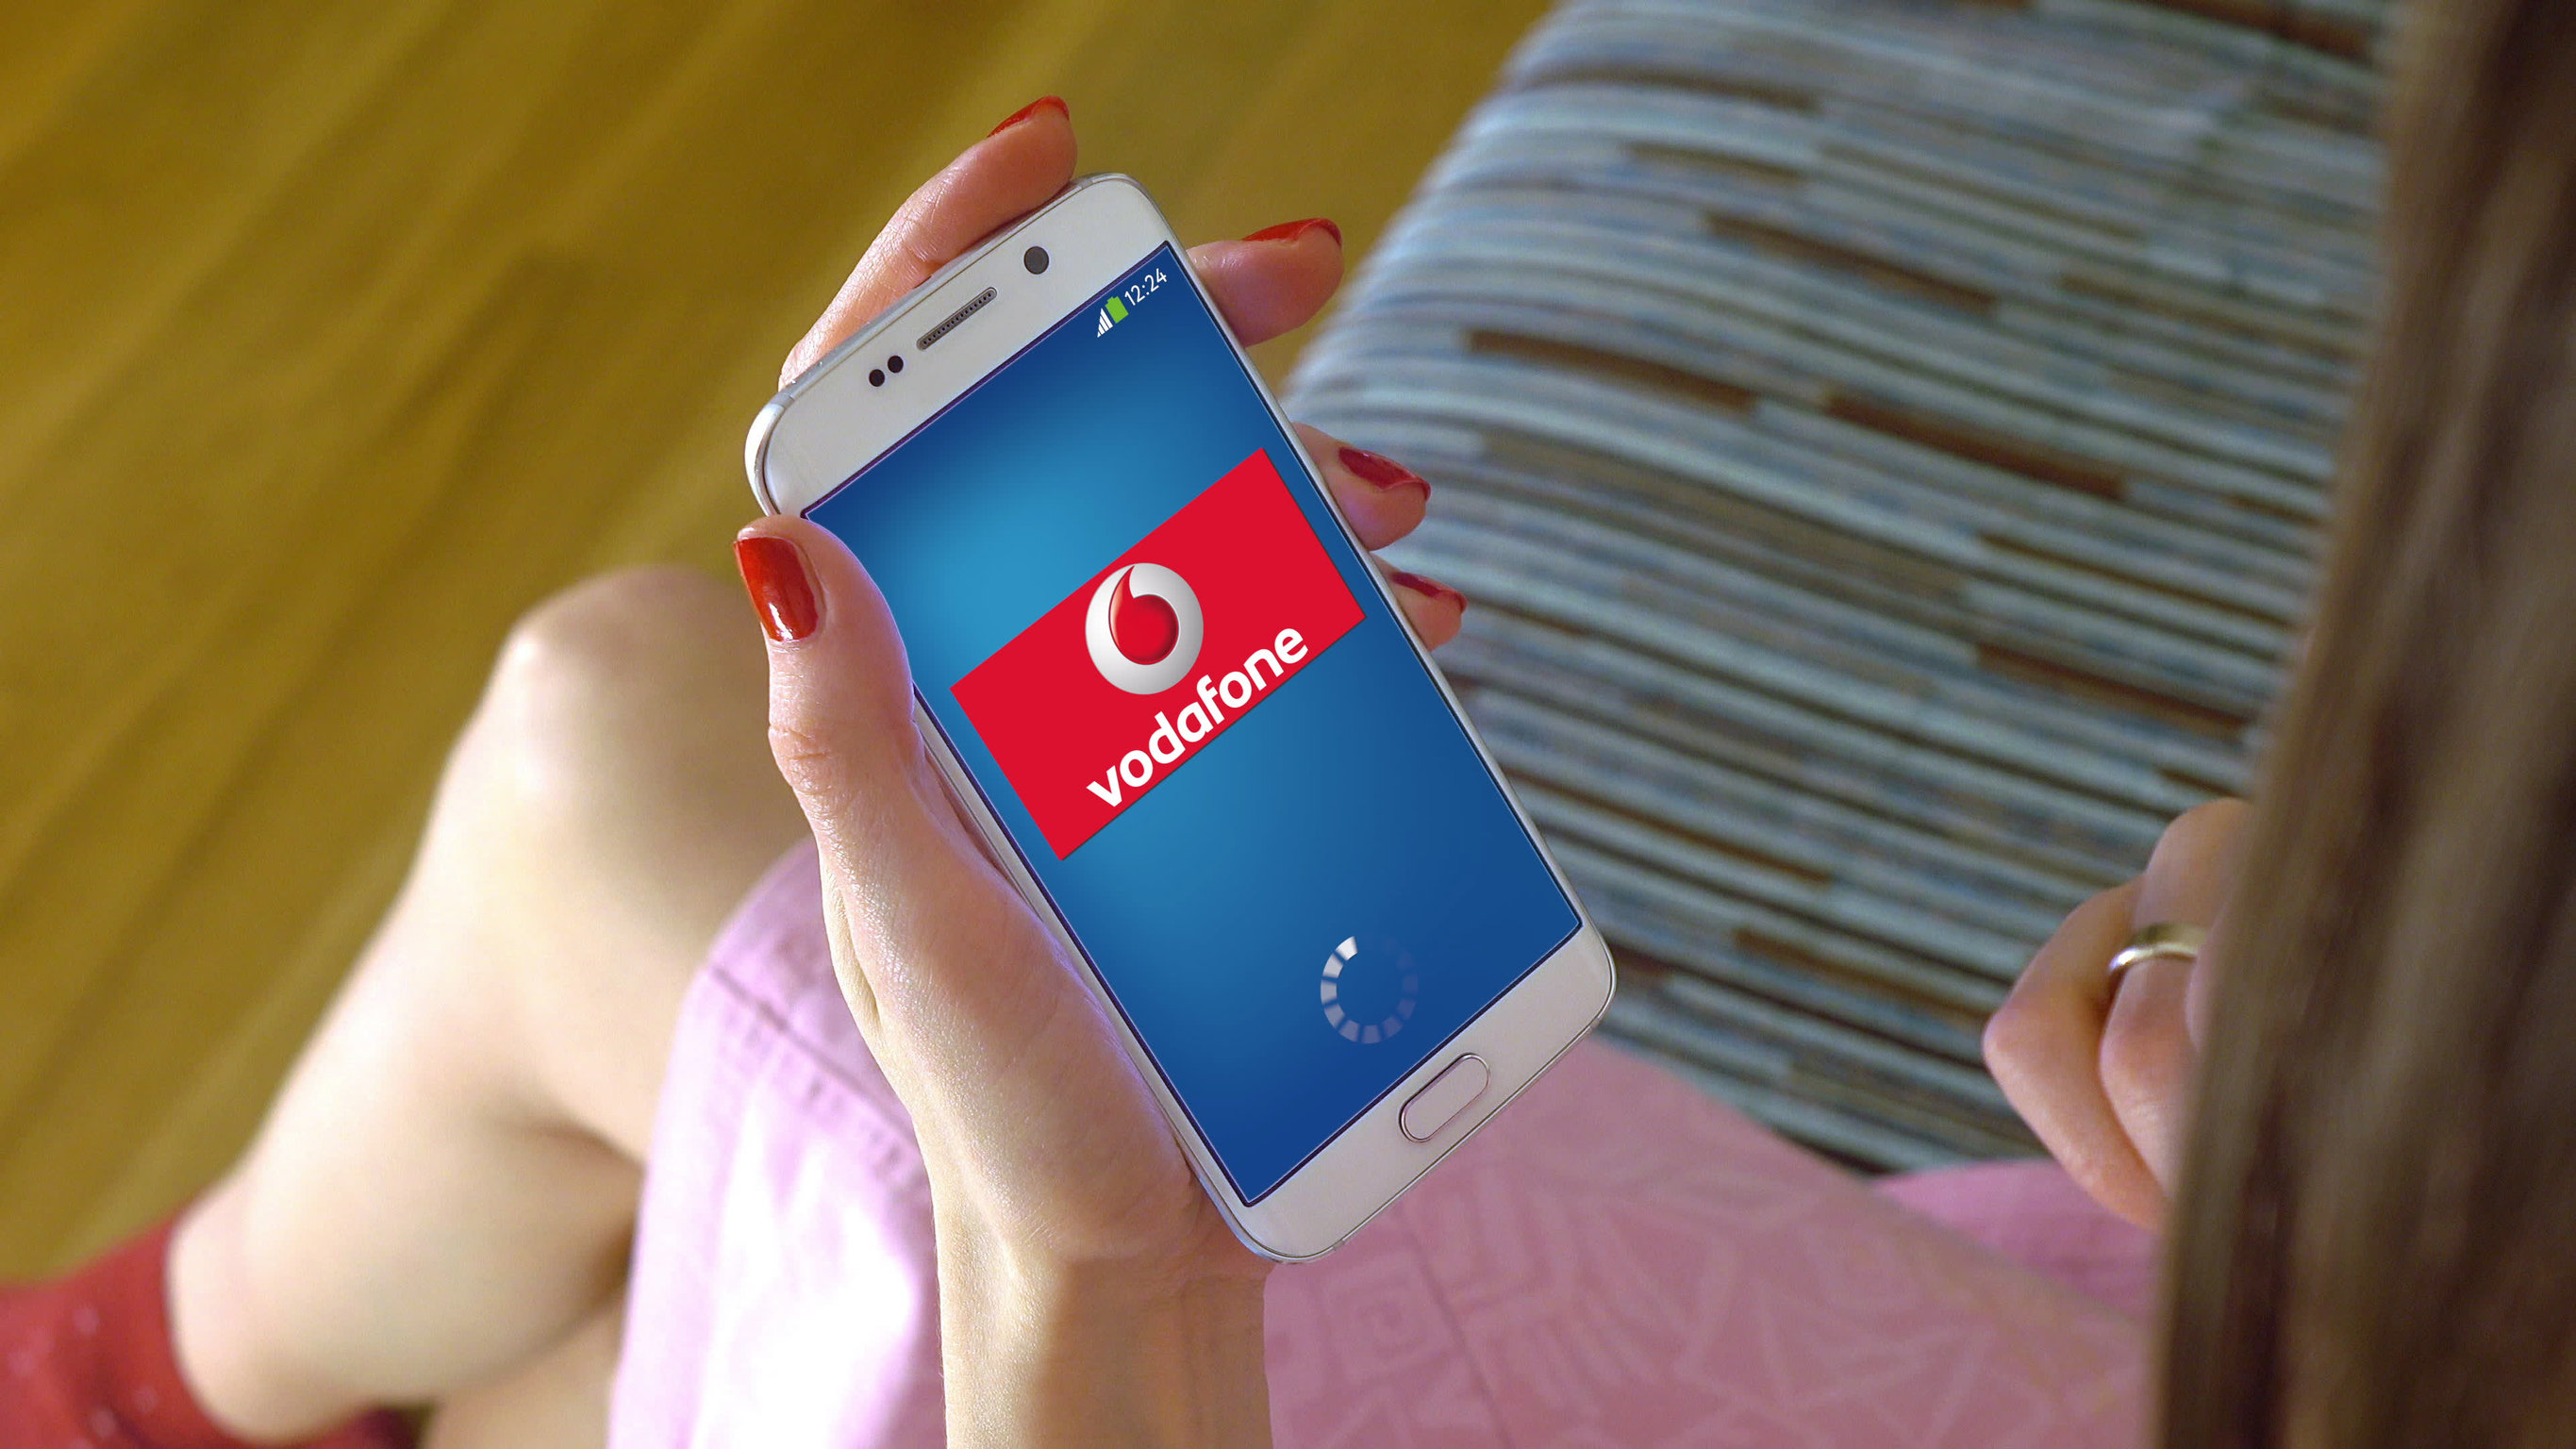 Smartphone in mano con logo Vodafone 